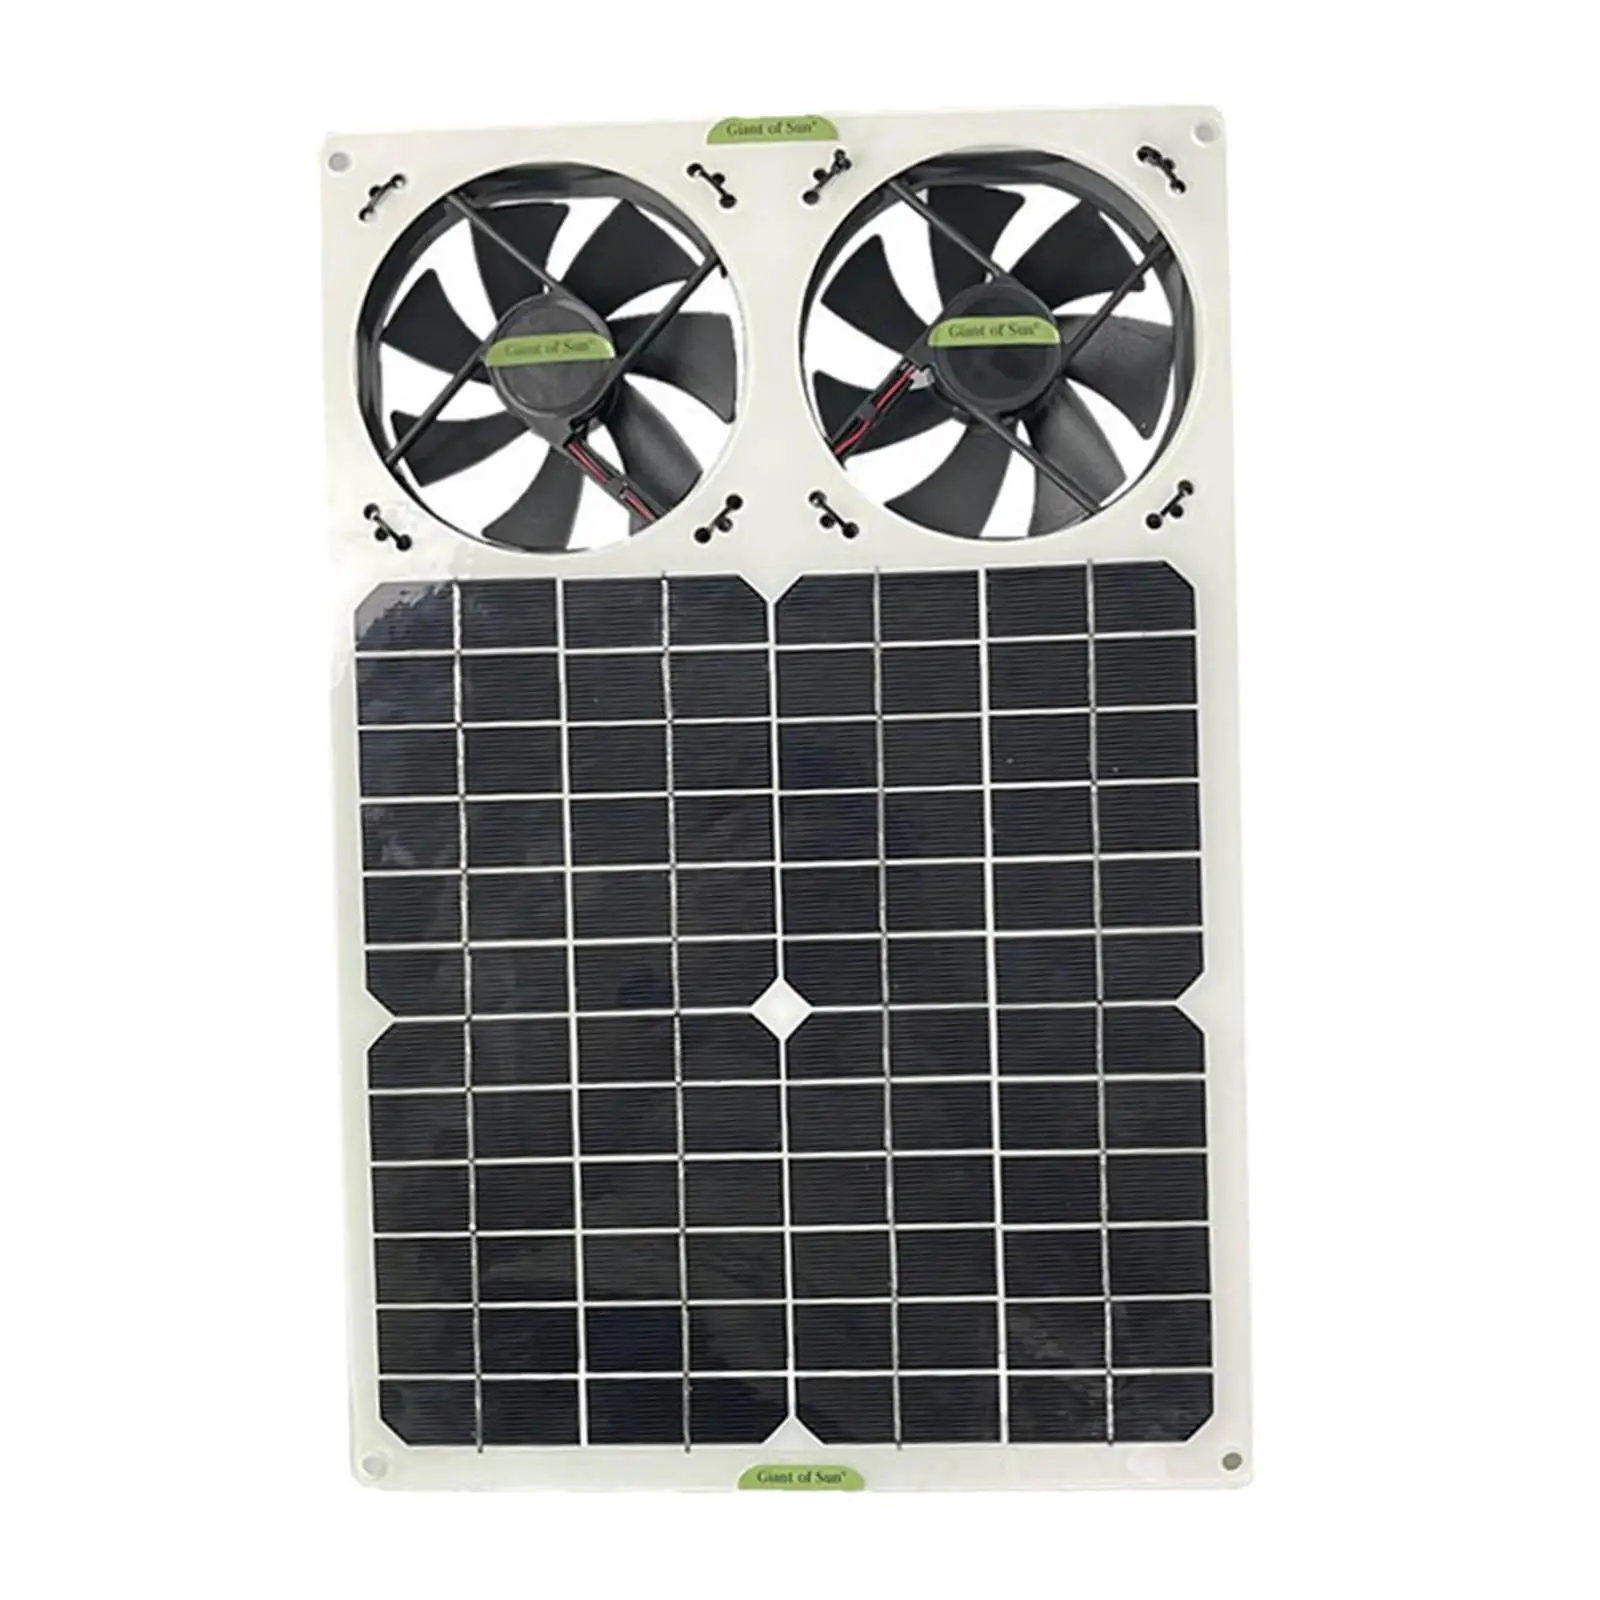 40W Solar Panel Powered Fan Exhaust Fan Mini Ventilator for Outside Shed Car